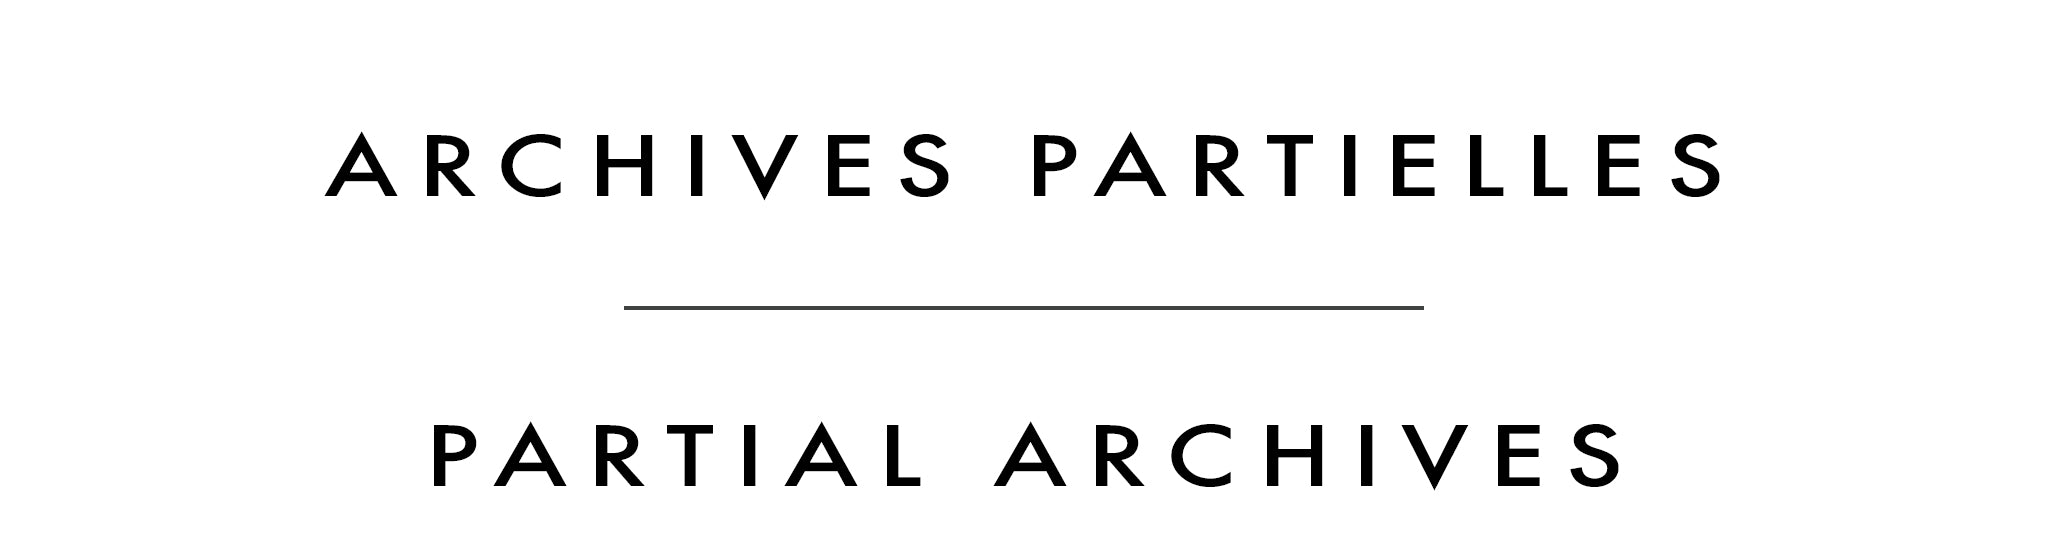 Archives partielles | Partial Archives | Allan Dunfield